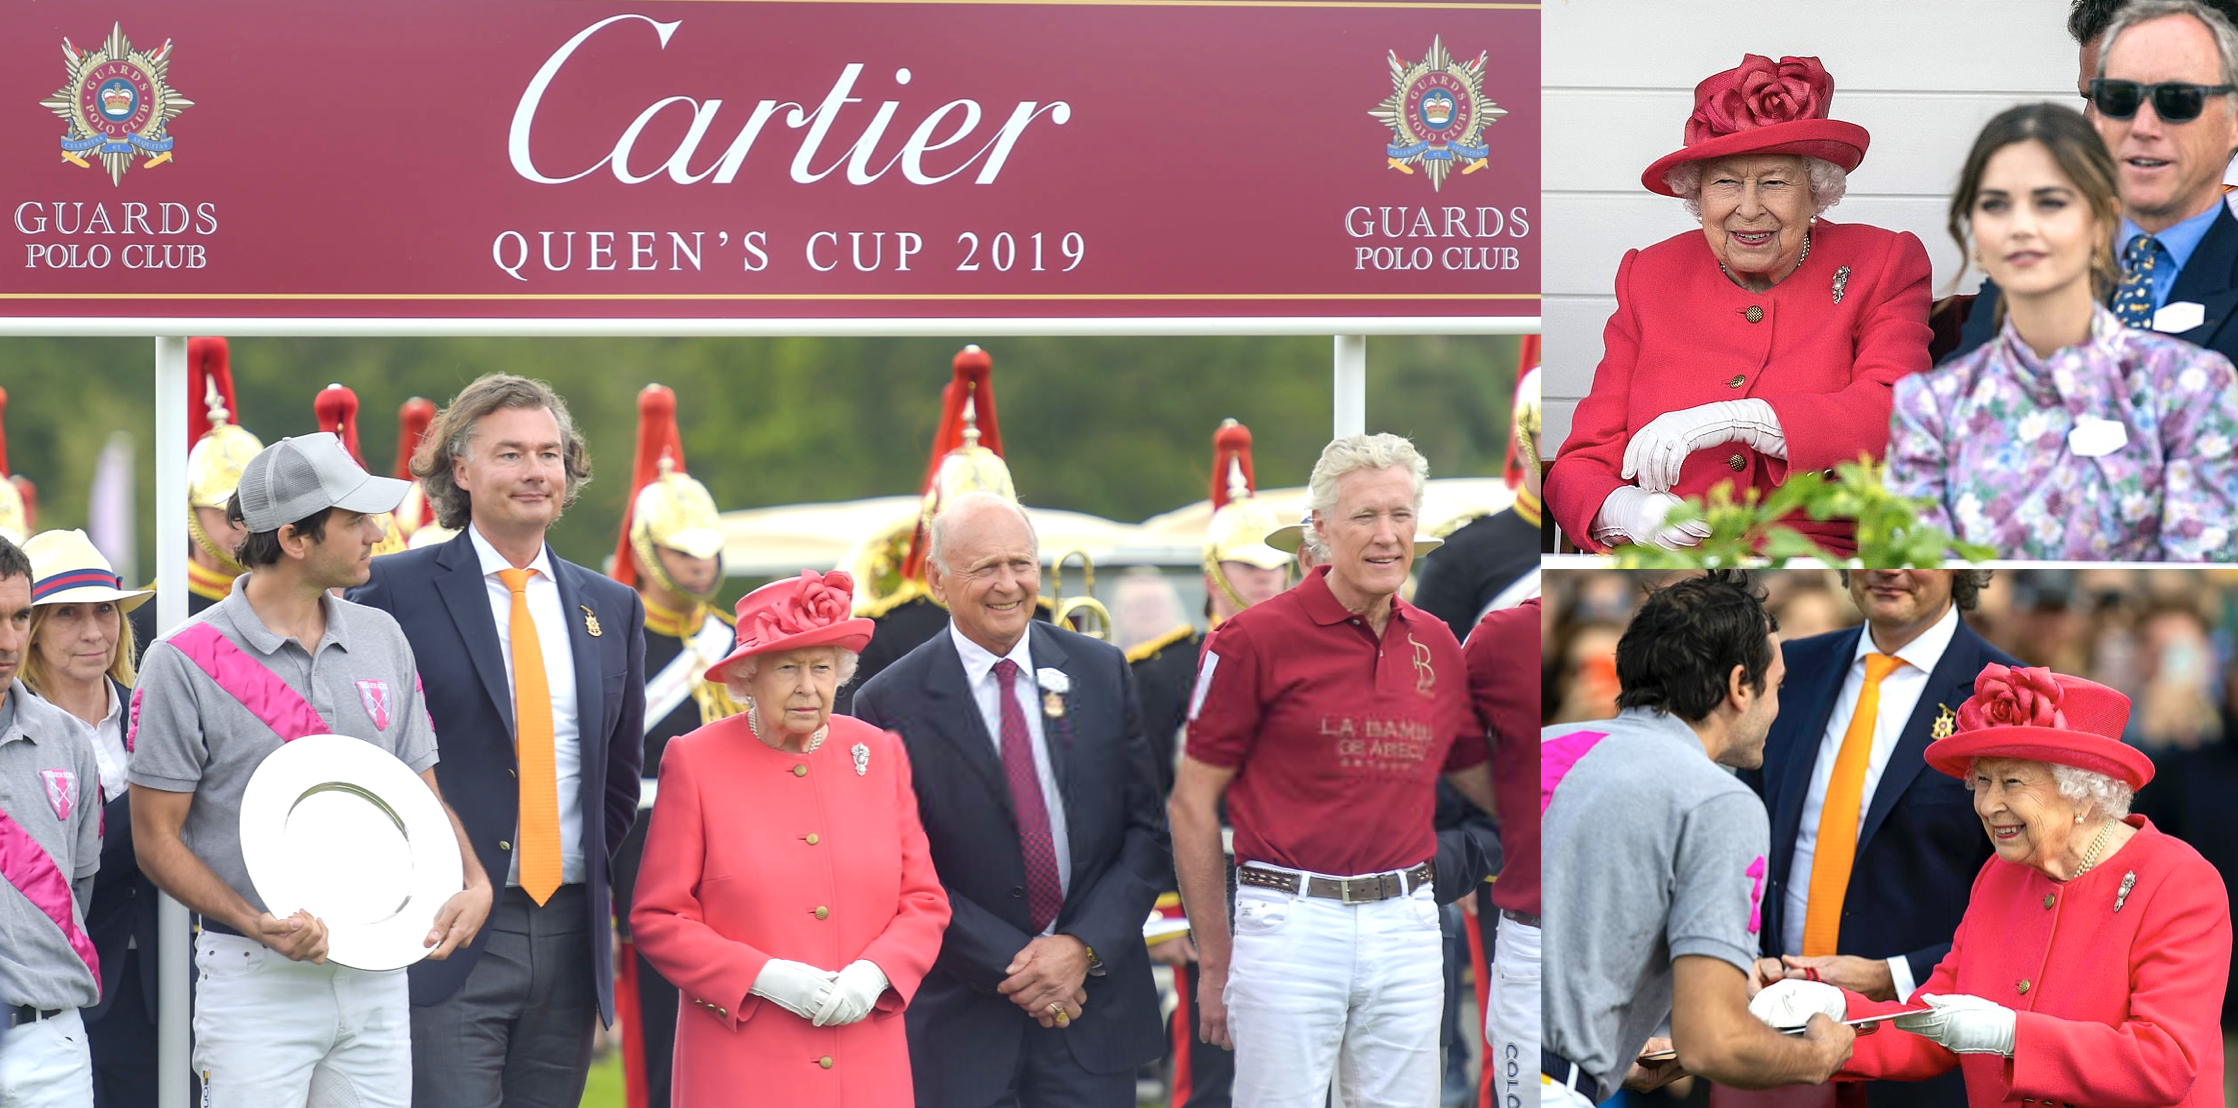 cartier queens cup polo